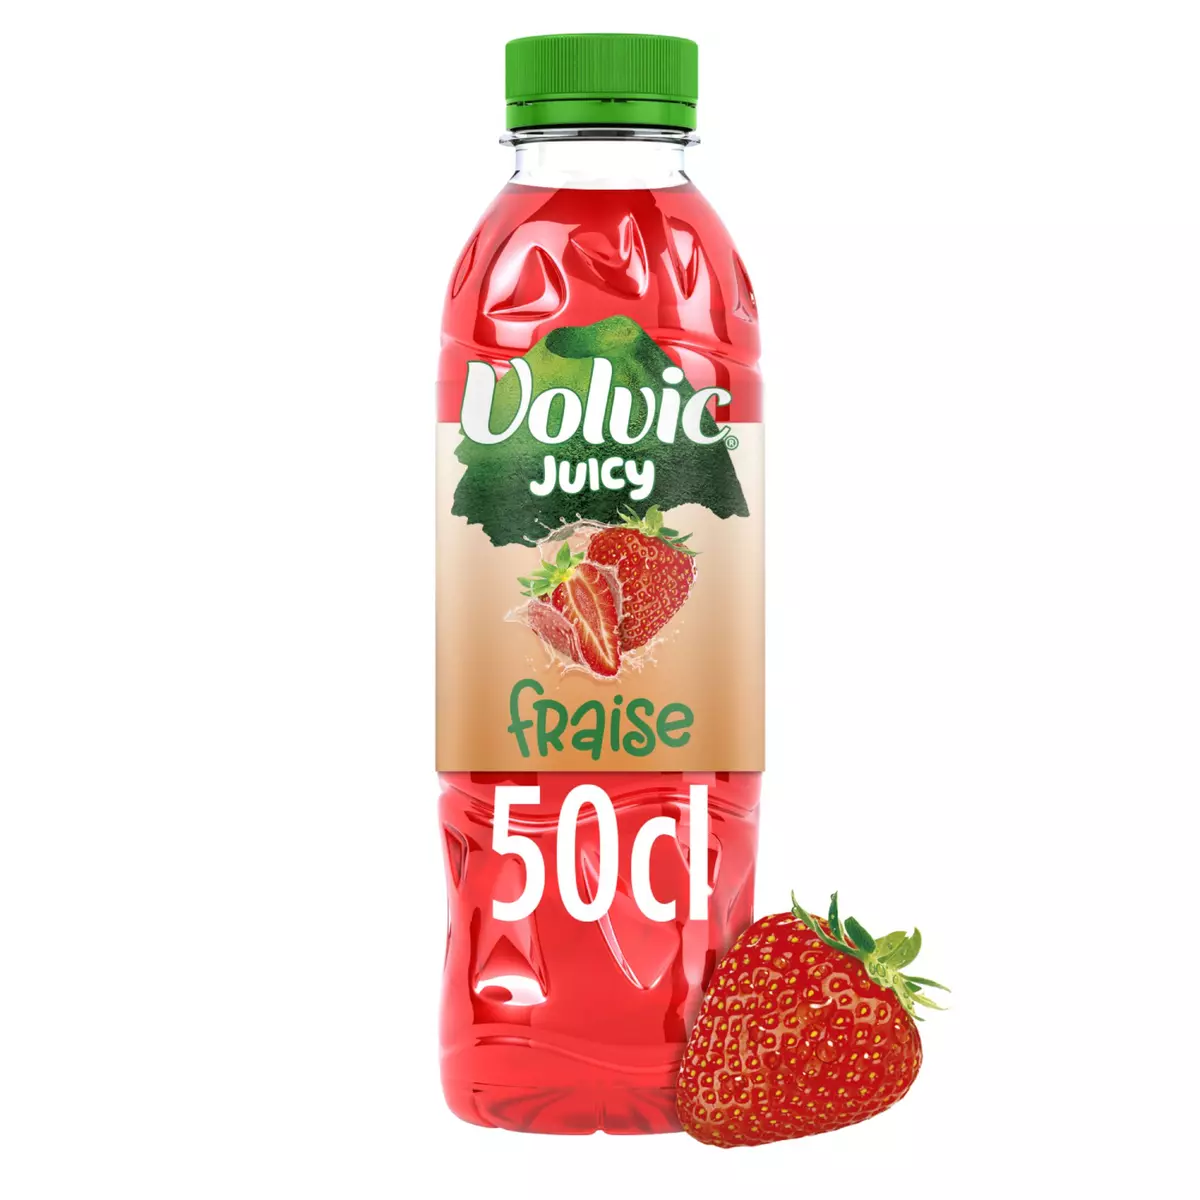 VOLVIC Eau aromatisée juicy au jus de fraise 50cl 50cl